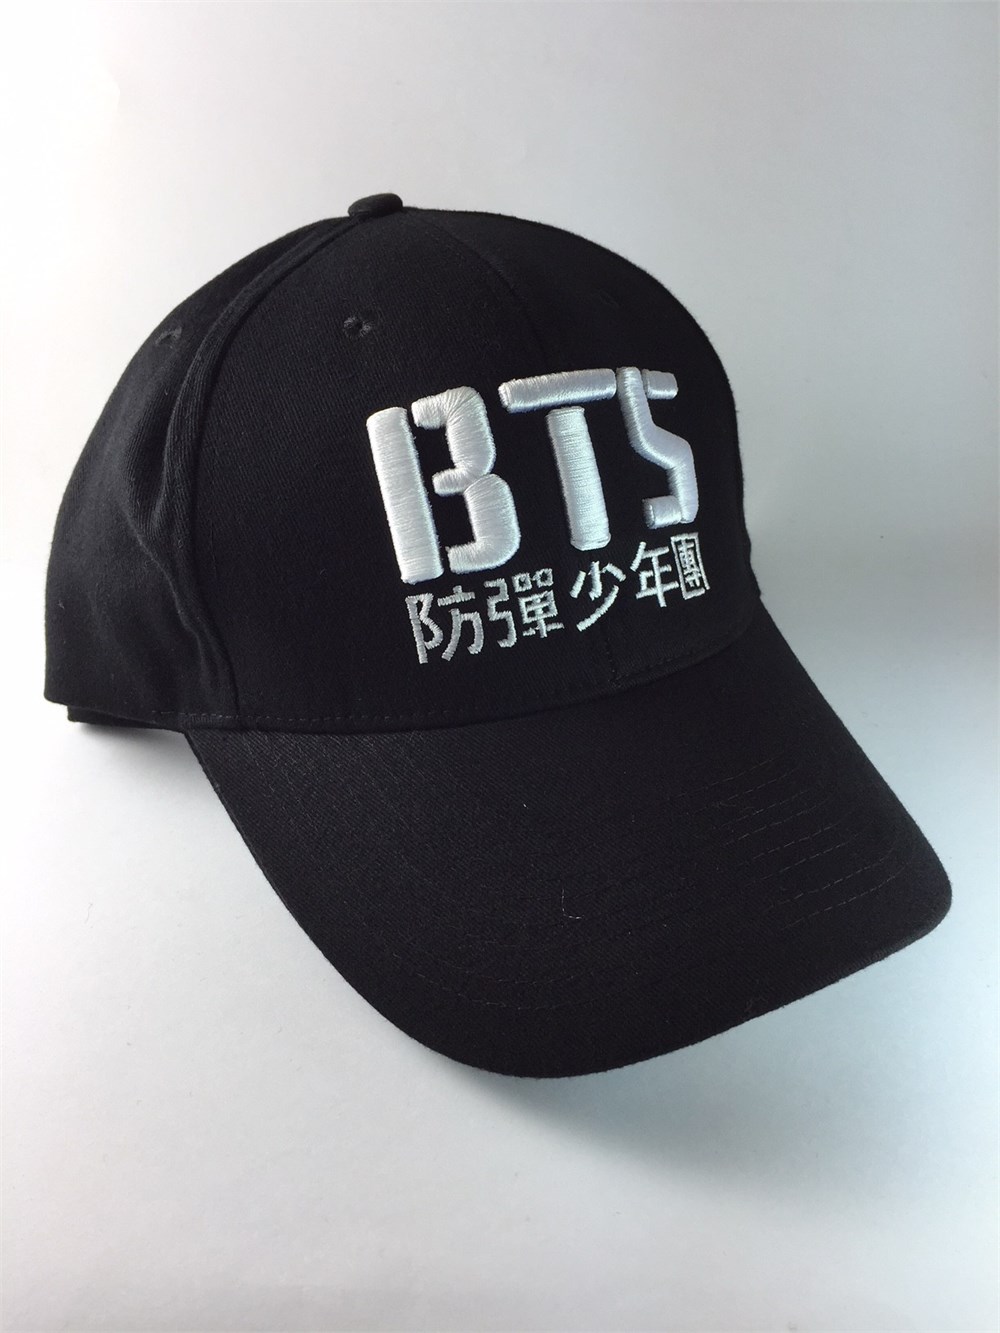 Bts Şapka- Kore Gruplarının En güzel ürünleri